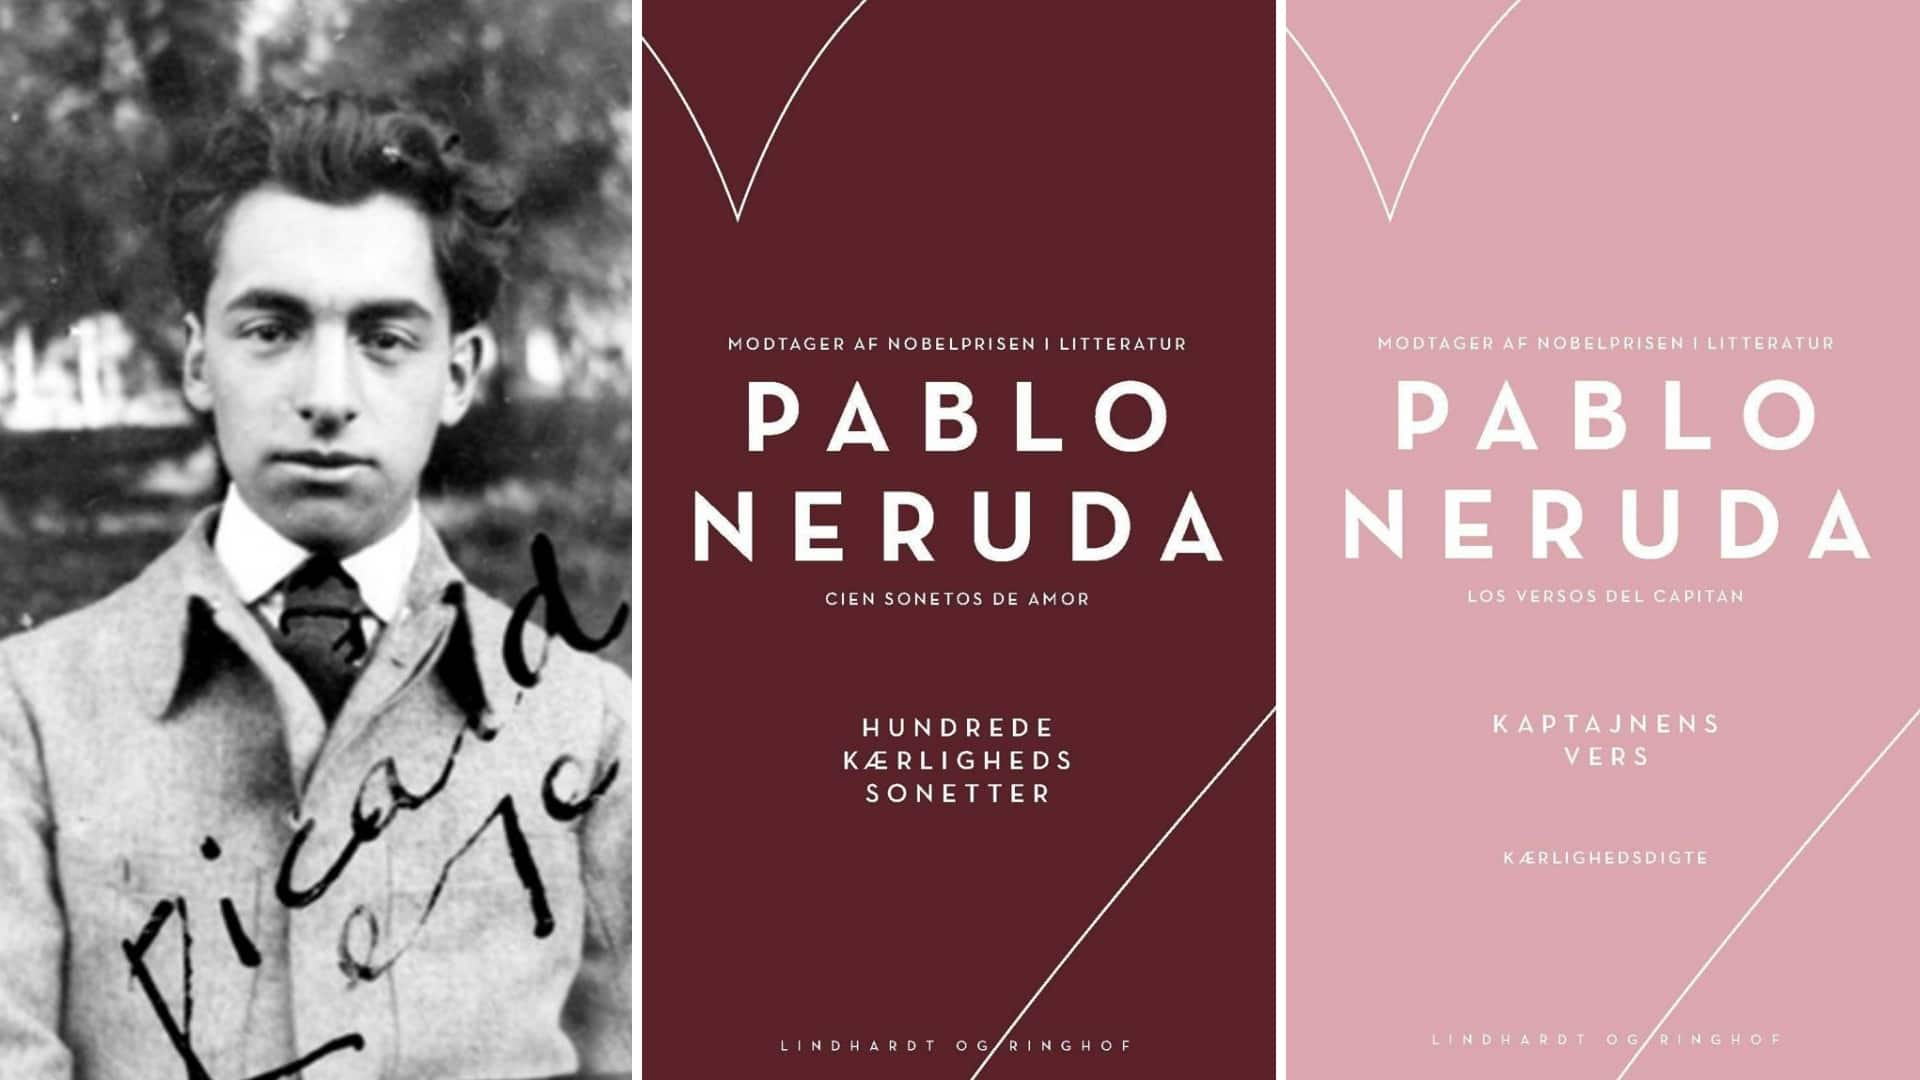 Pablo Neruda, Kaptajnens vers, Hundrede kærlighedssonetter